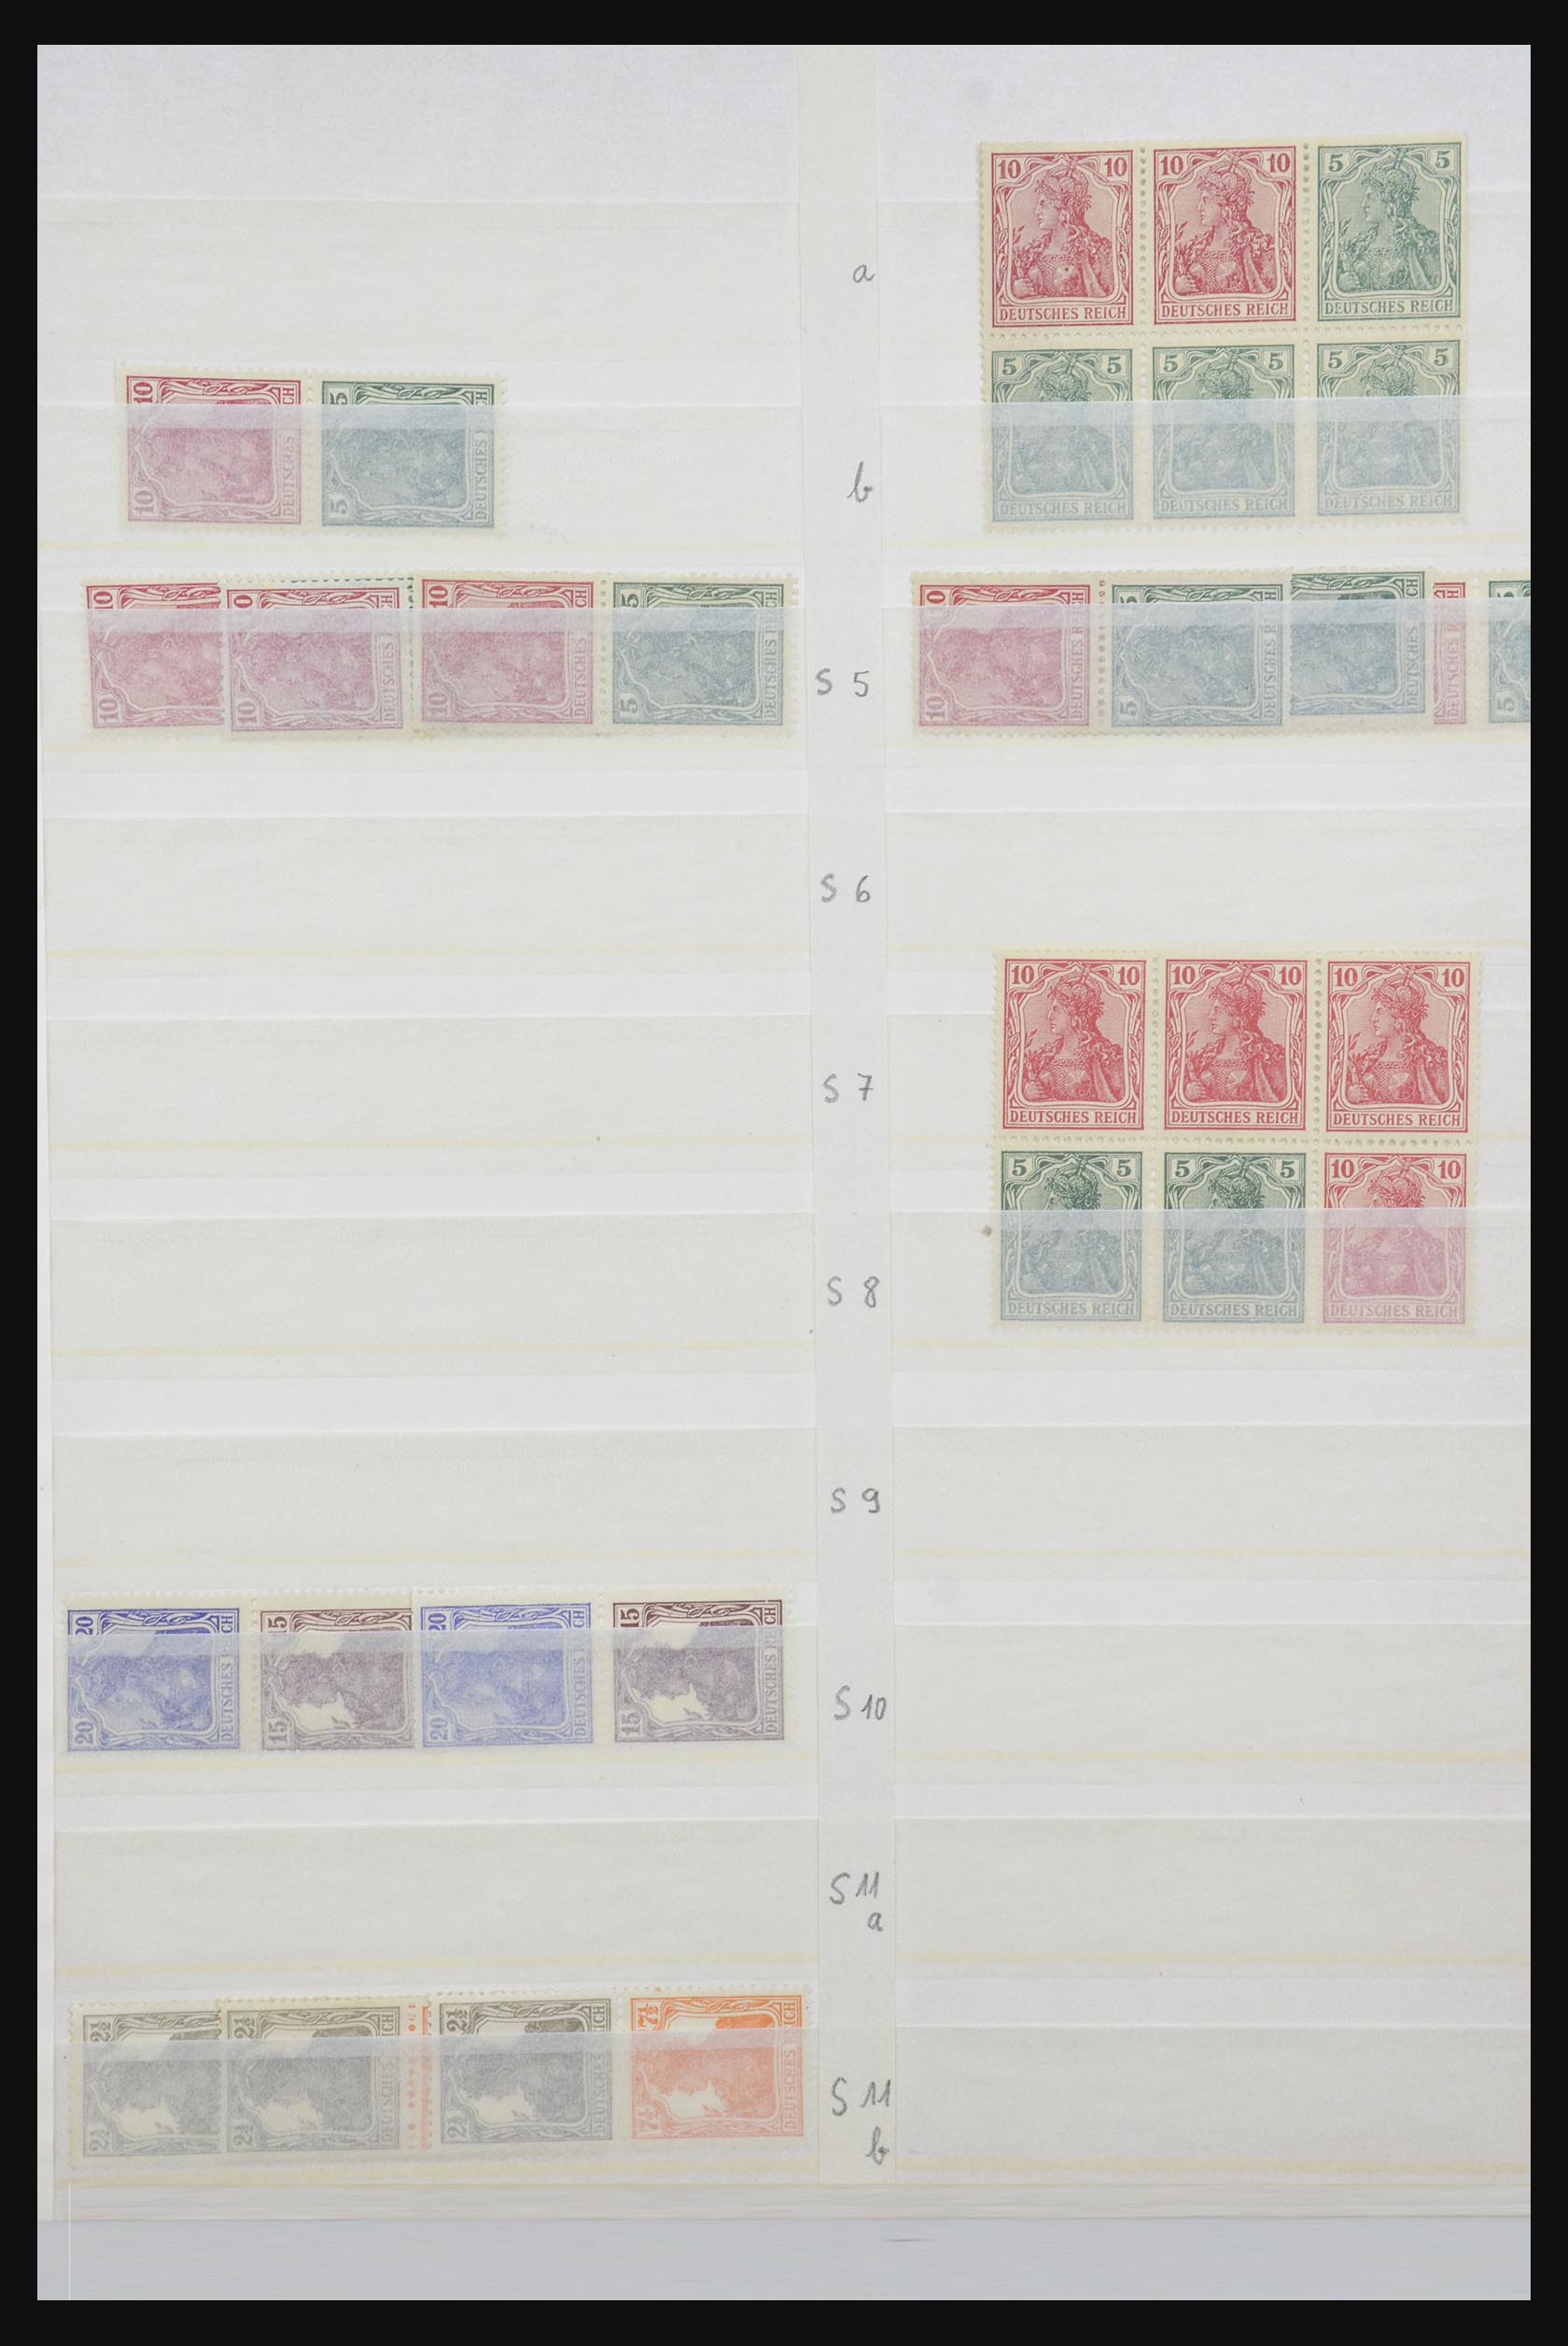 31884 003 - 31884 Duitsland combinaties 1920-1980.